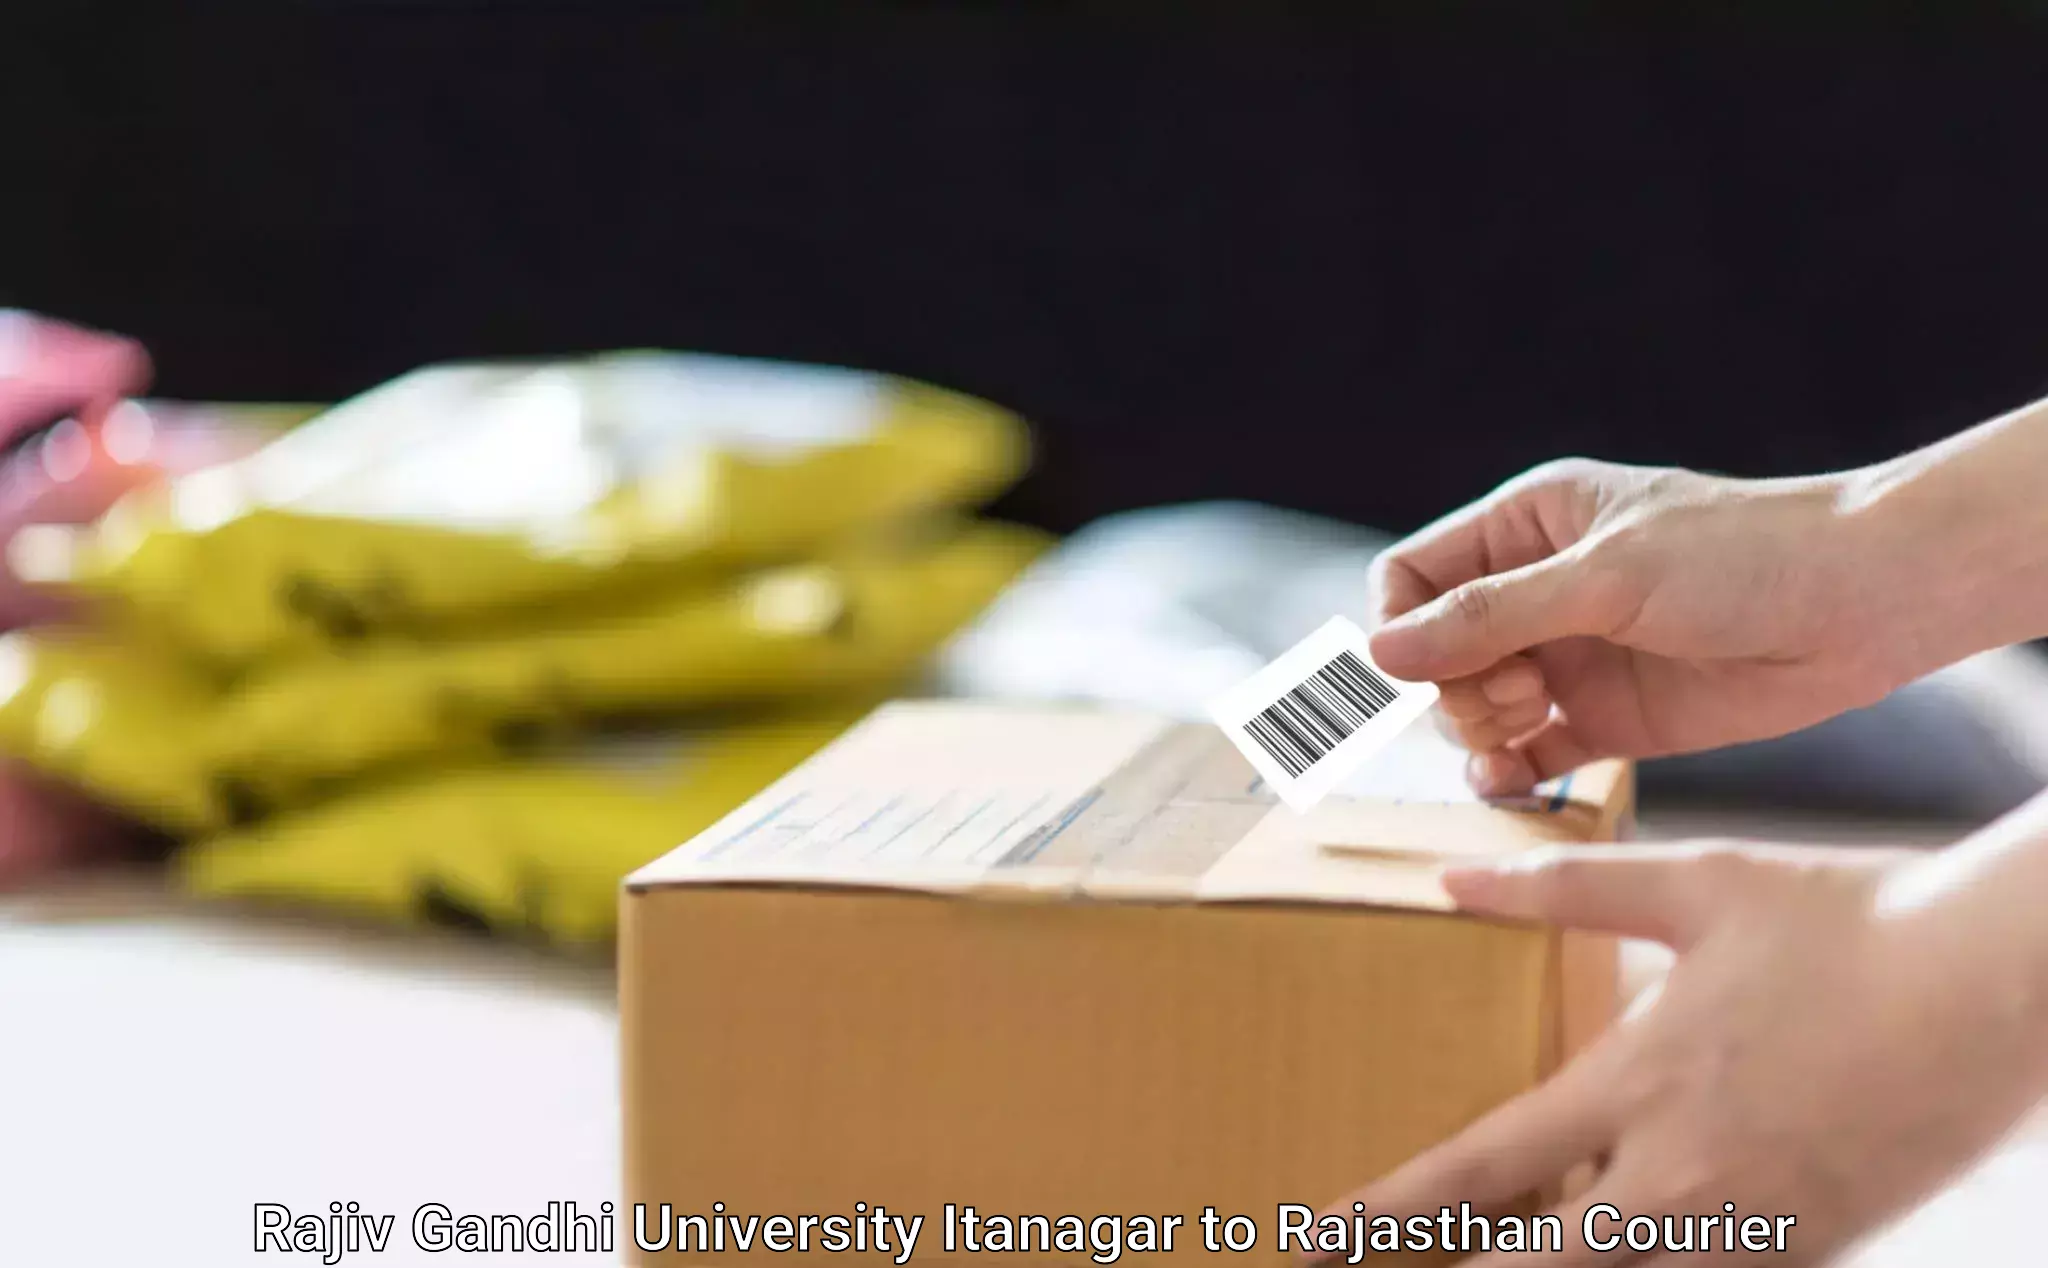 Express package delivery Rajiv Gandhi University Itanagar to Dhariyawad